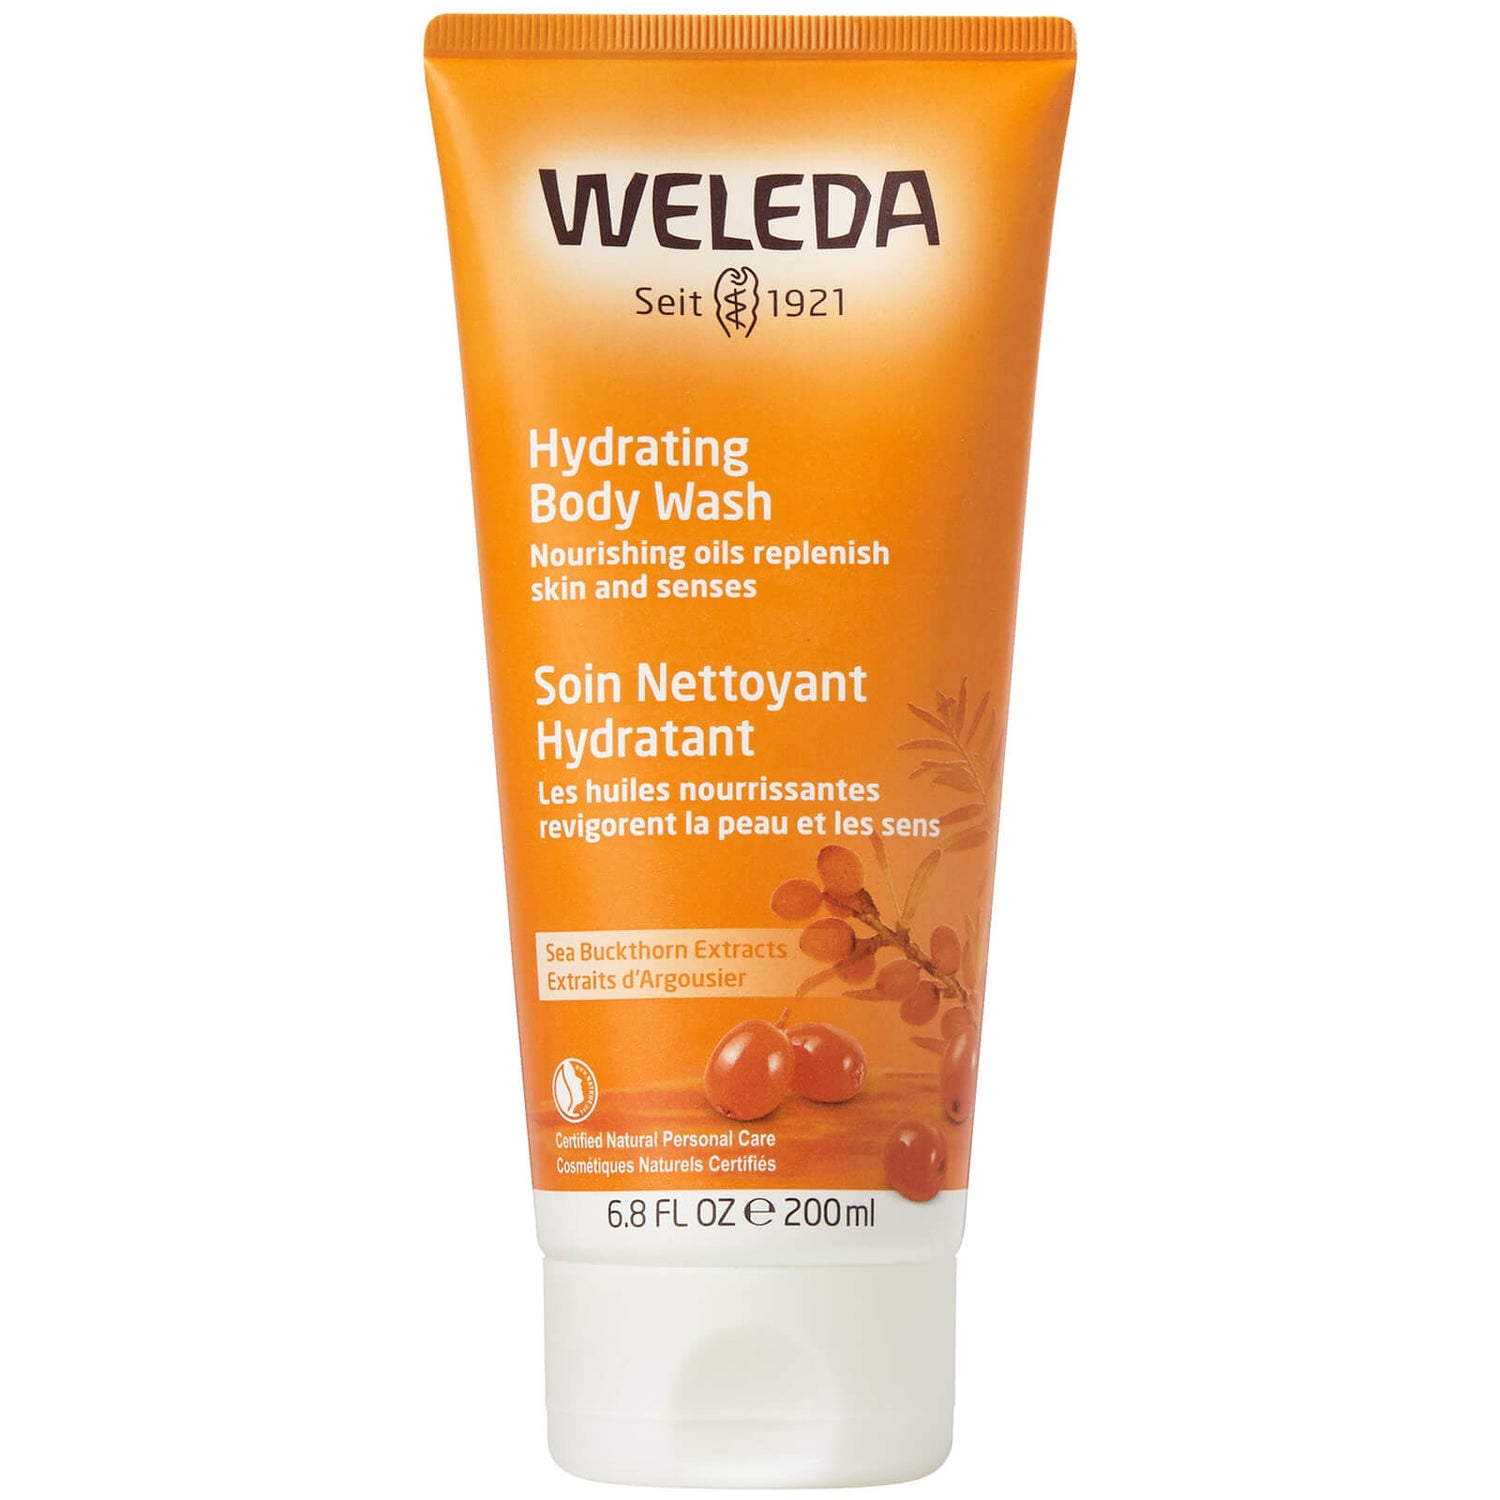 Weleda Body Wash crémeux à l'argousier (200ml)